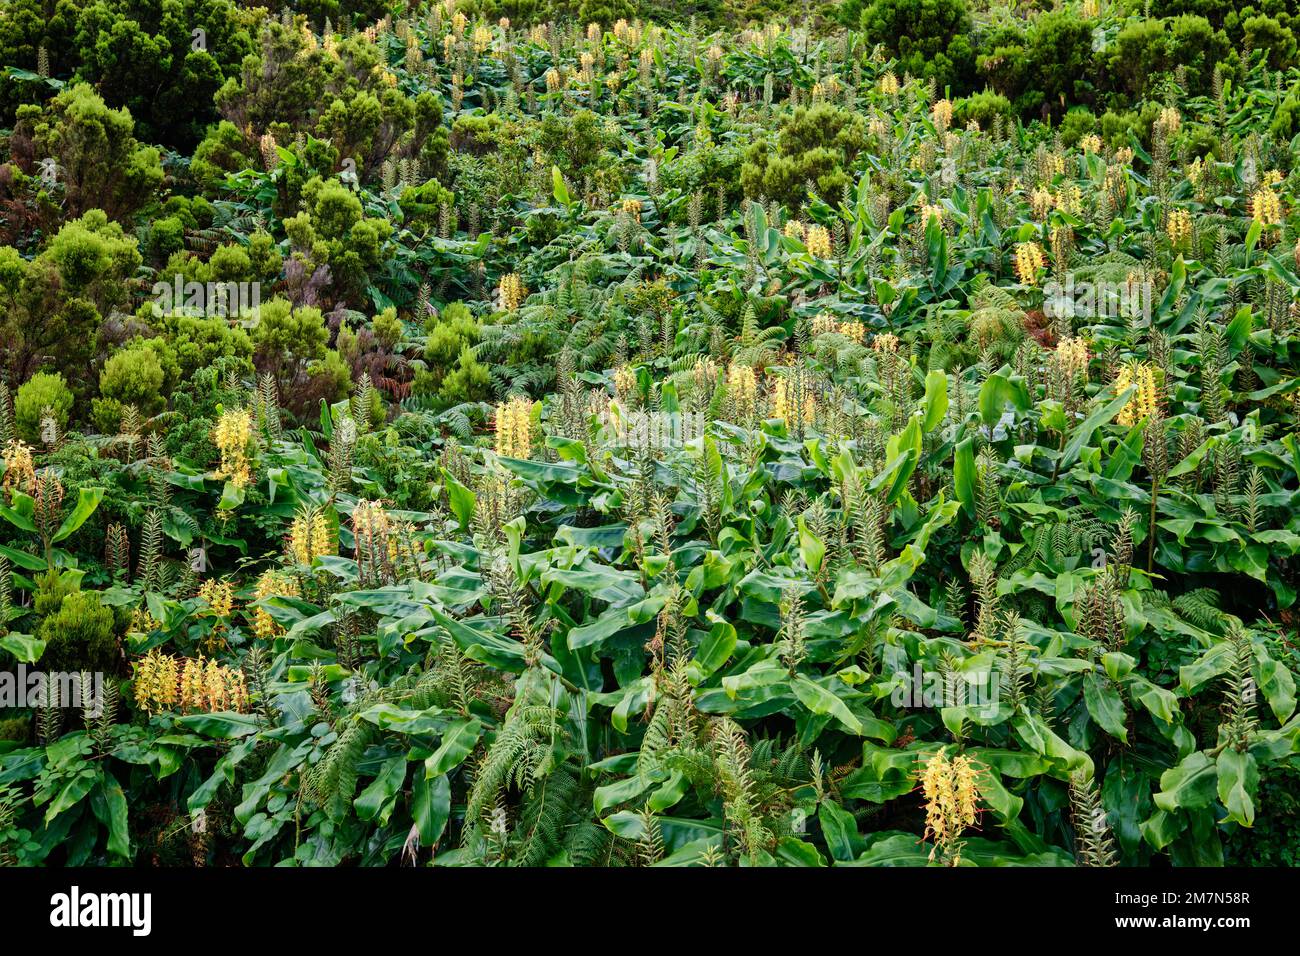 Cana-Roca (Hedychium gardnerianum). Planta que floresce no final do verão. Oriunda dos Himalaias, é considerada uma espécie invasora na Nova Zelândia, Stock Photo